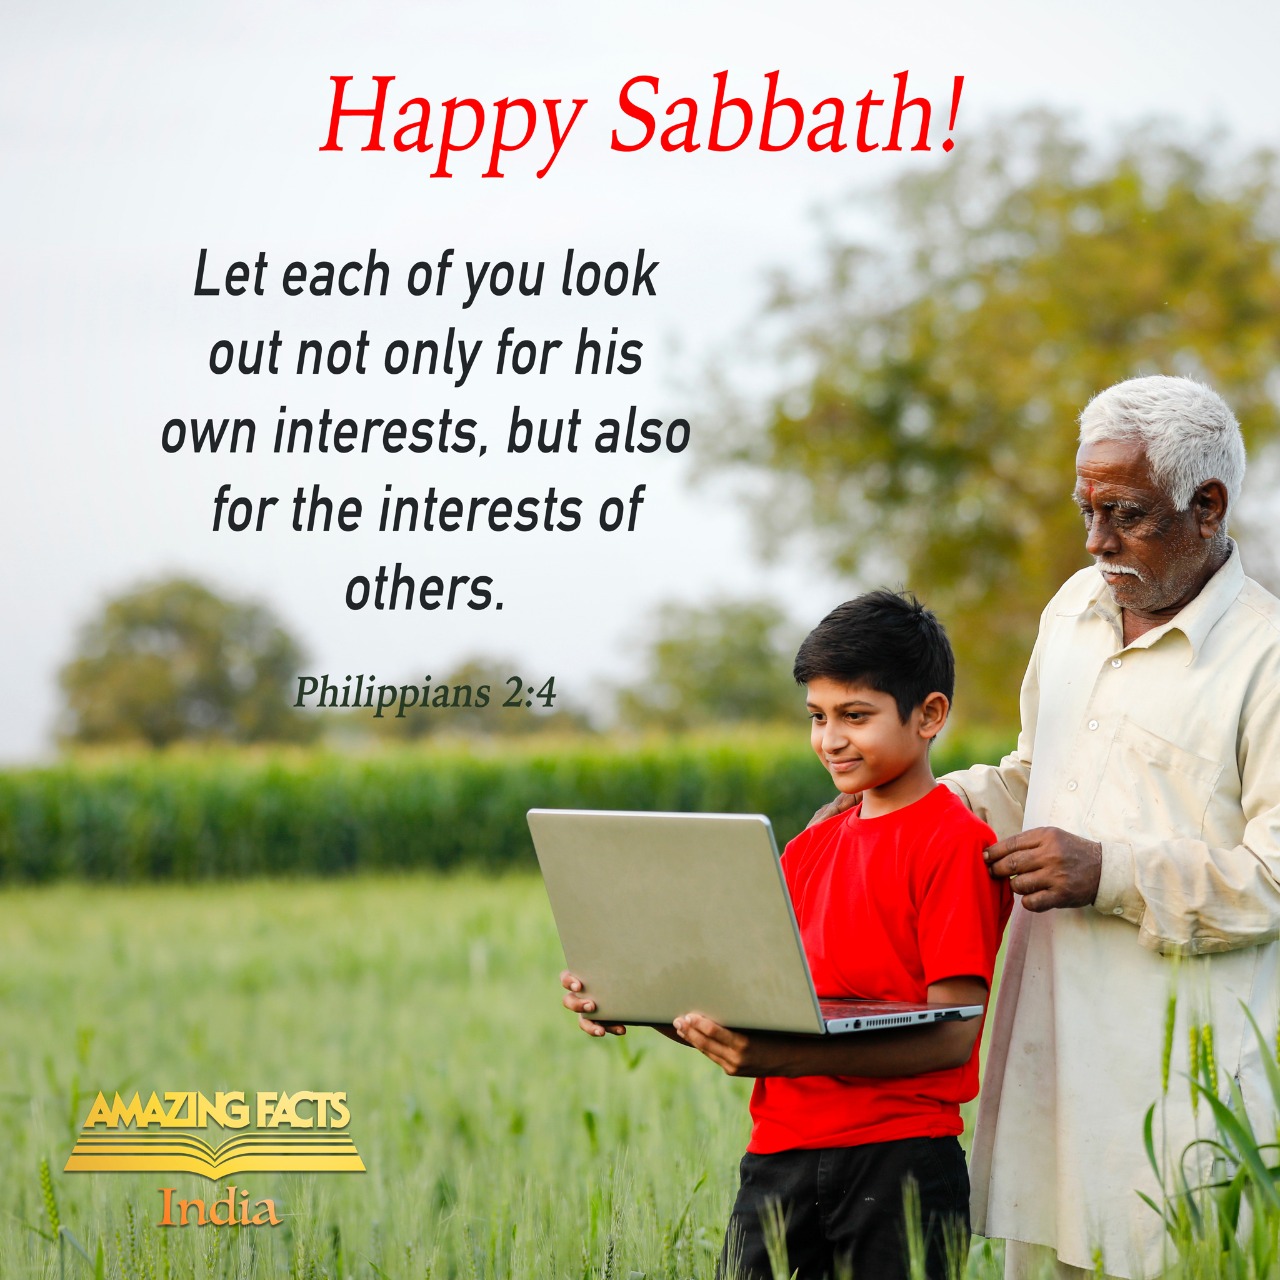 happy sabbath Images • Amazing Facts India ministry Offical  (@amazingfactsindia) on ShareChat